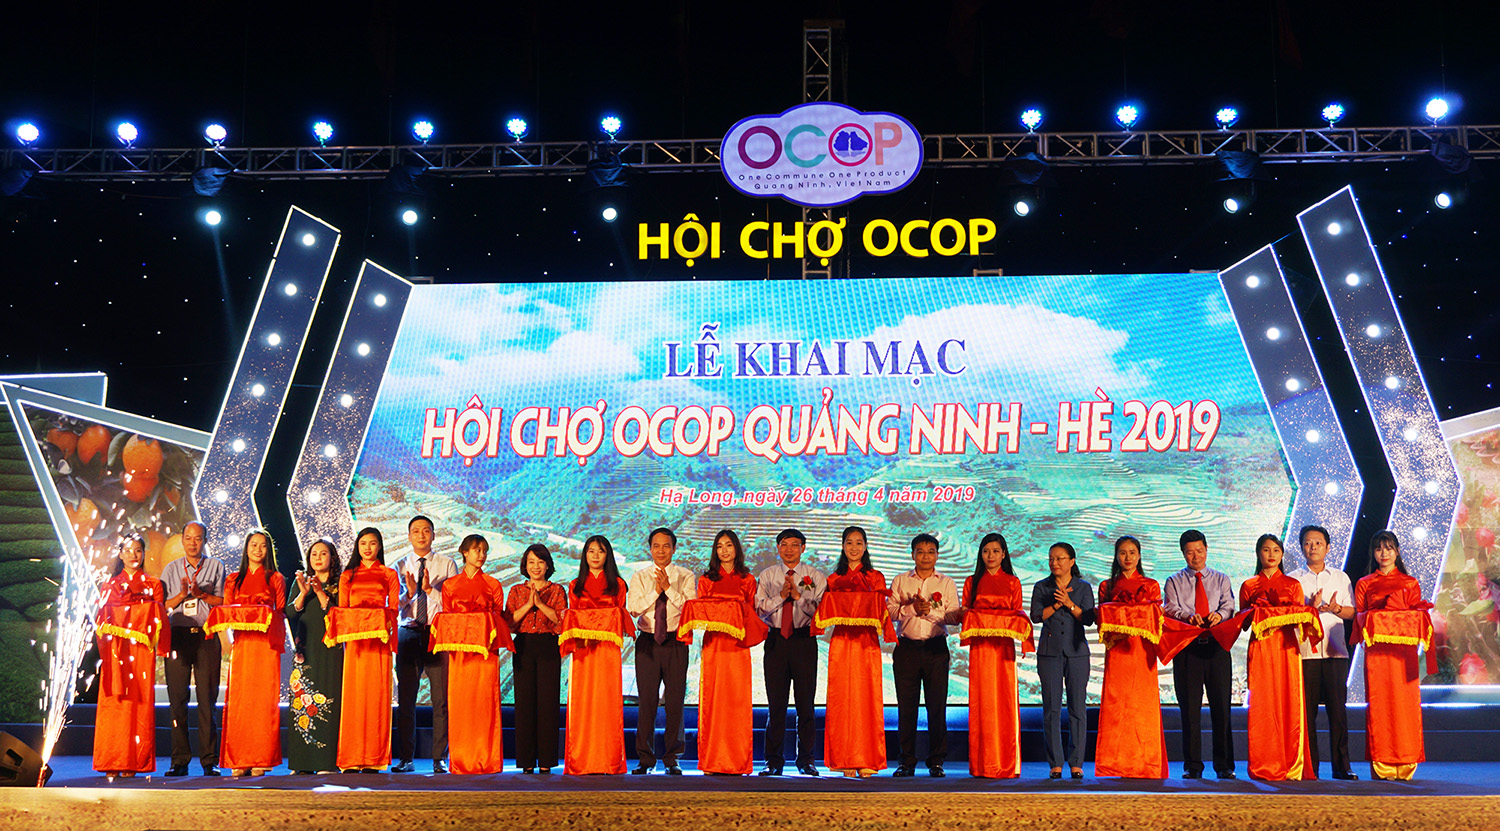 Khai mạc Hội chợ OCOP Quảng Ninh – Hè 2019